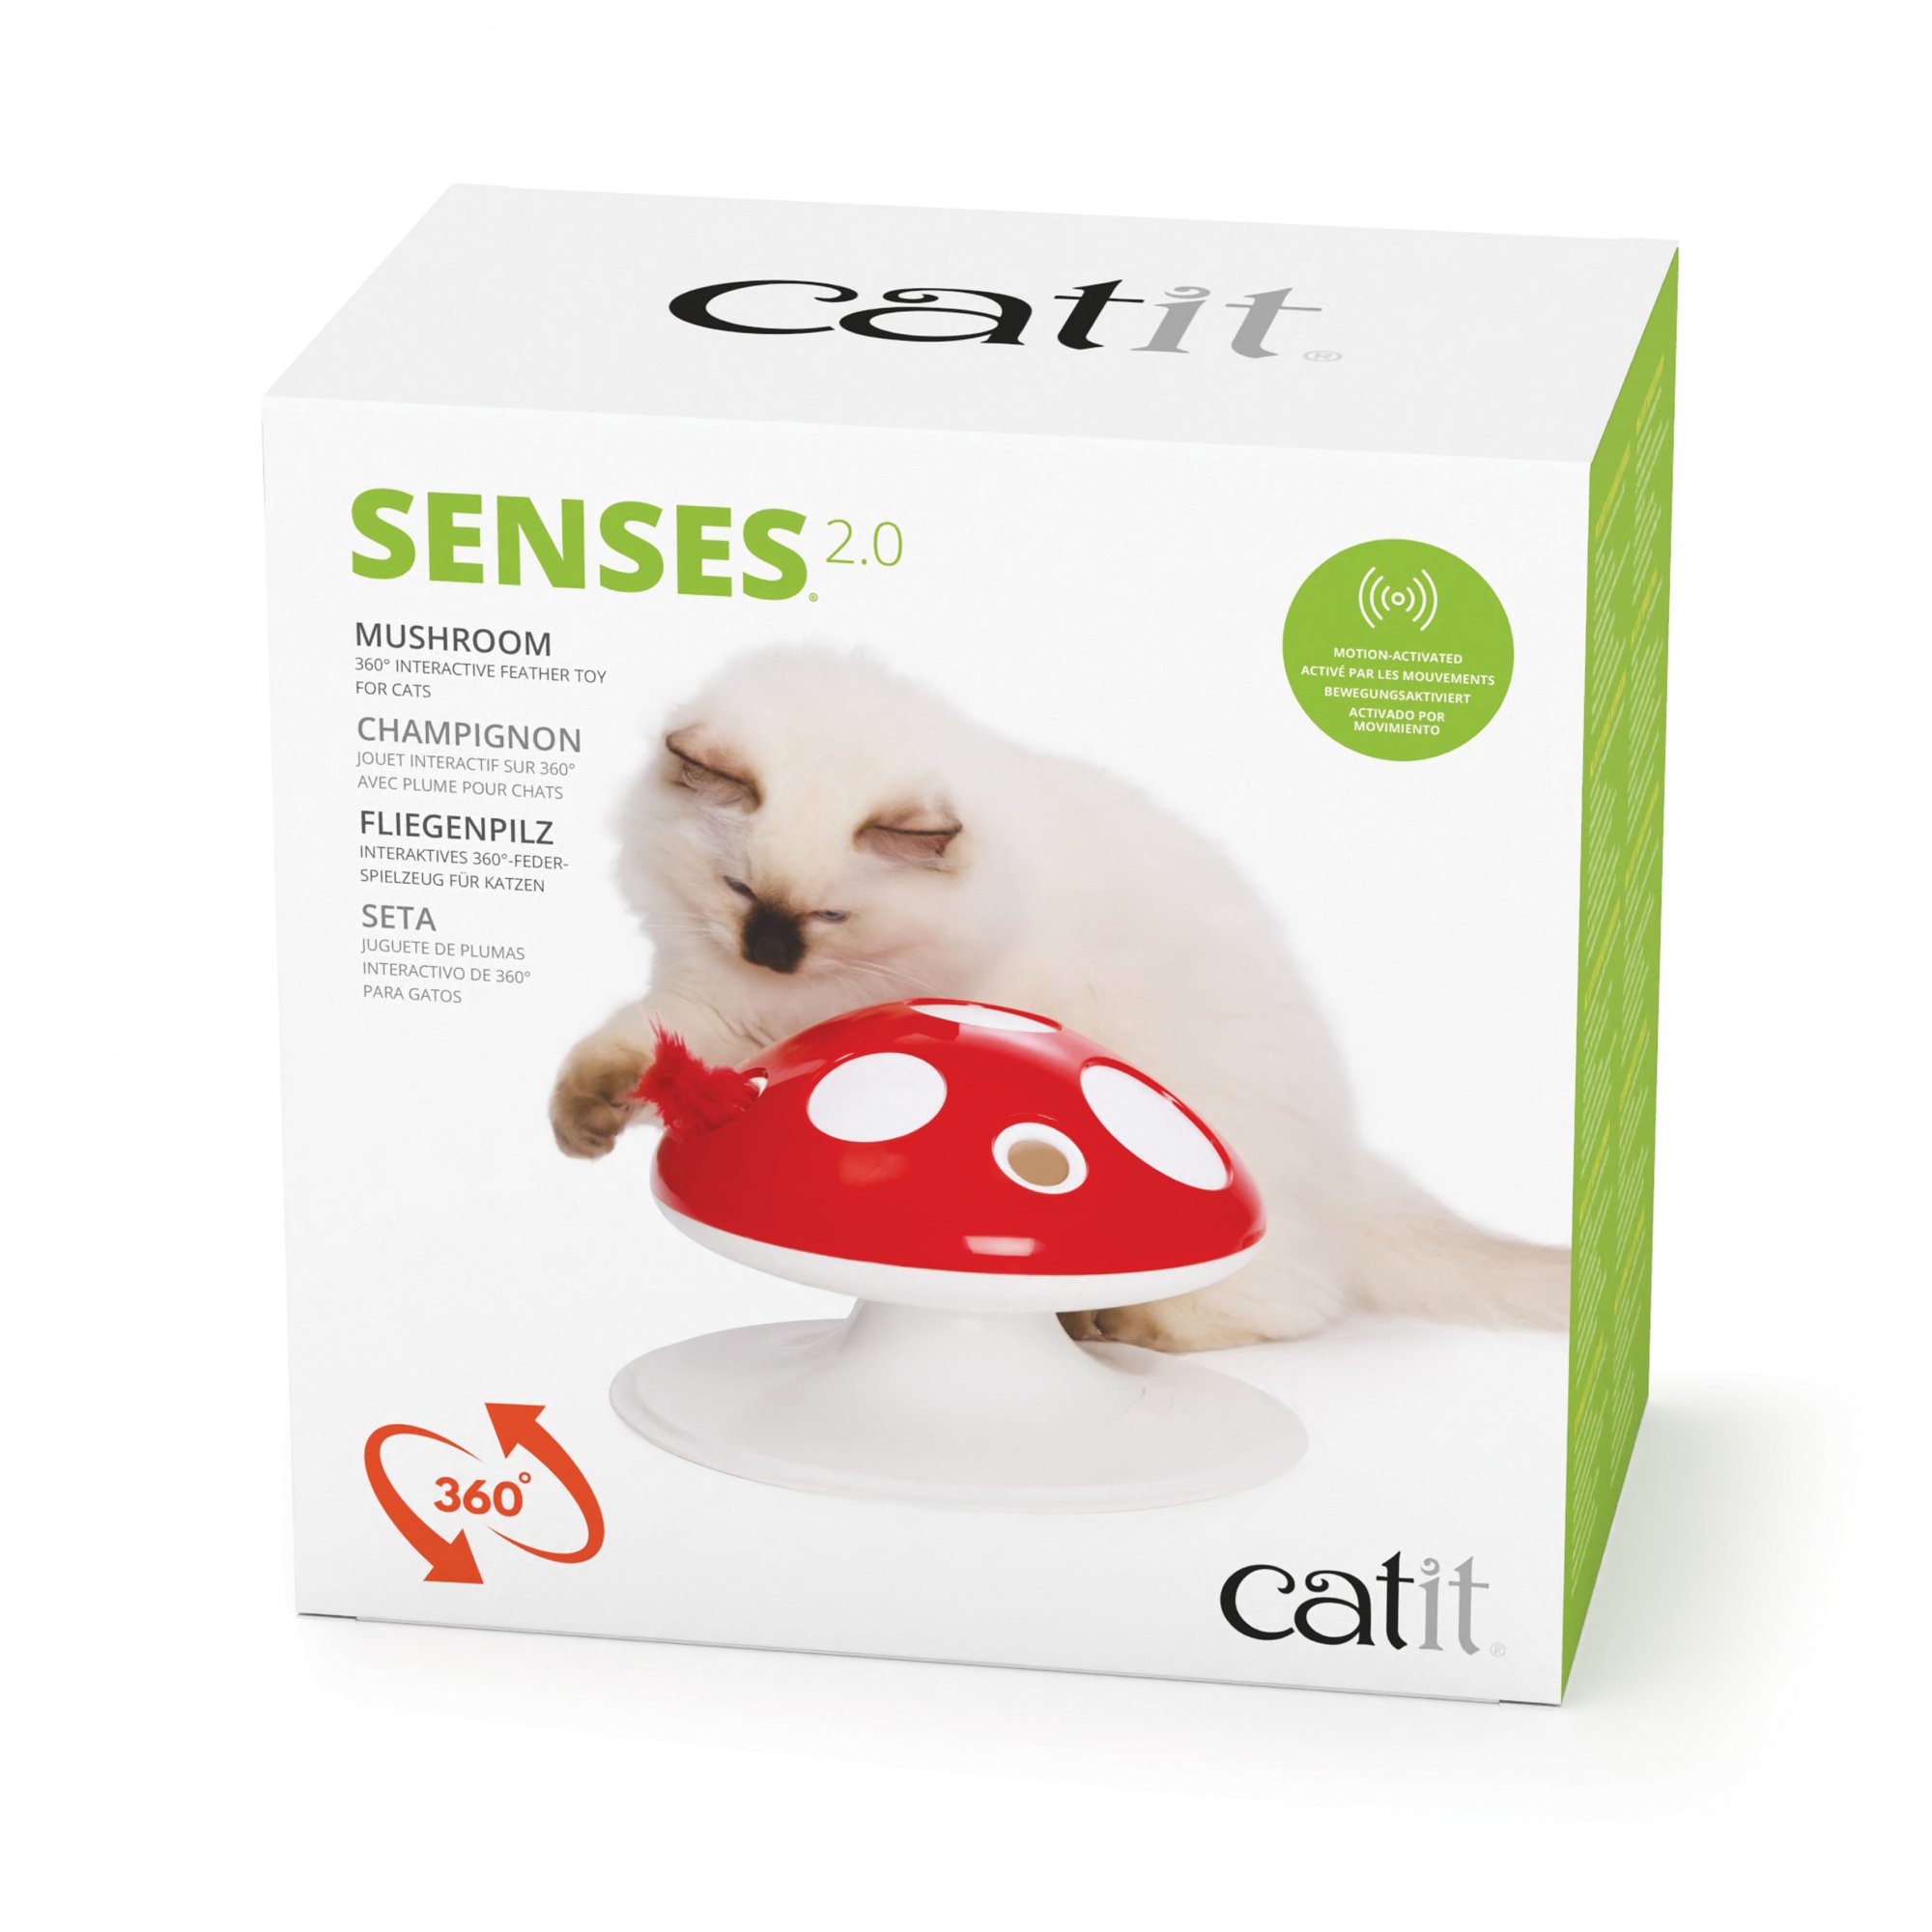 Catit Senses 2.0 Fungo gatto interattivo